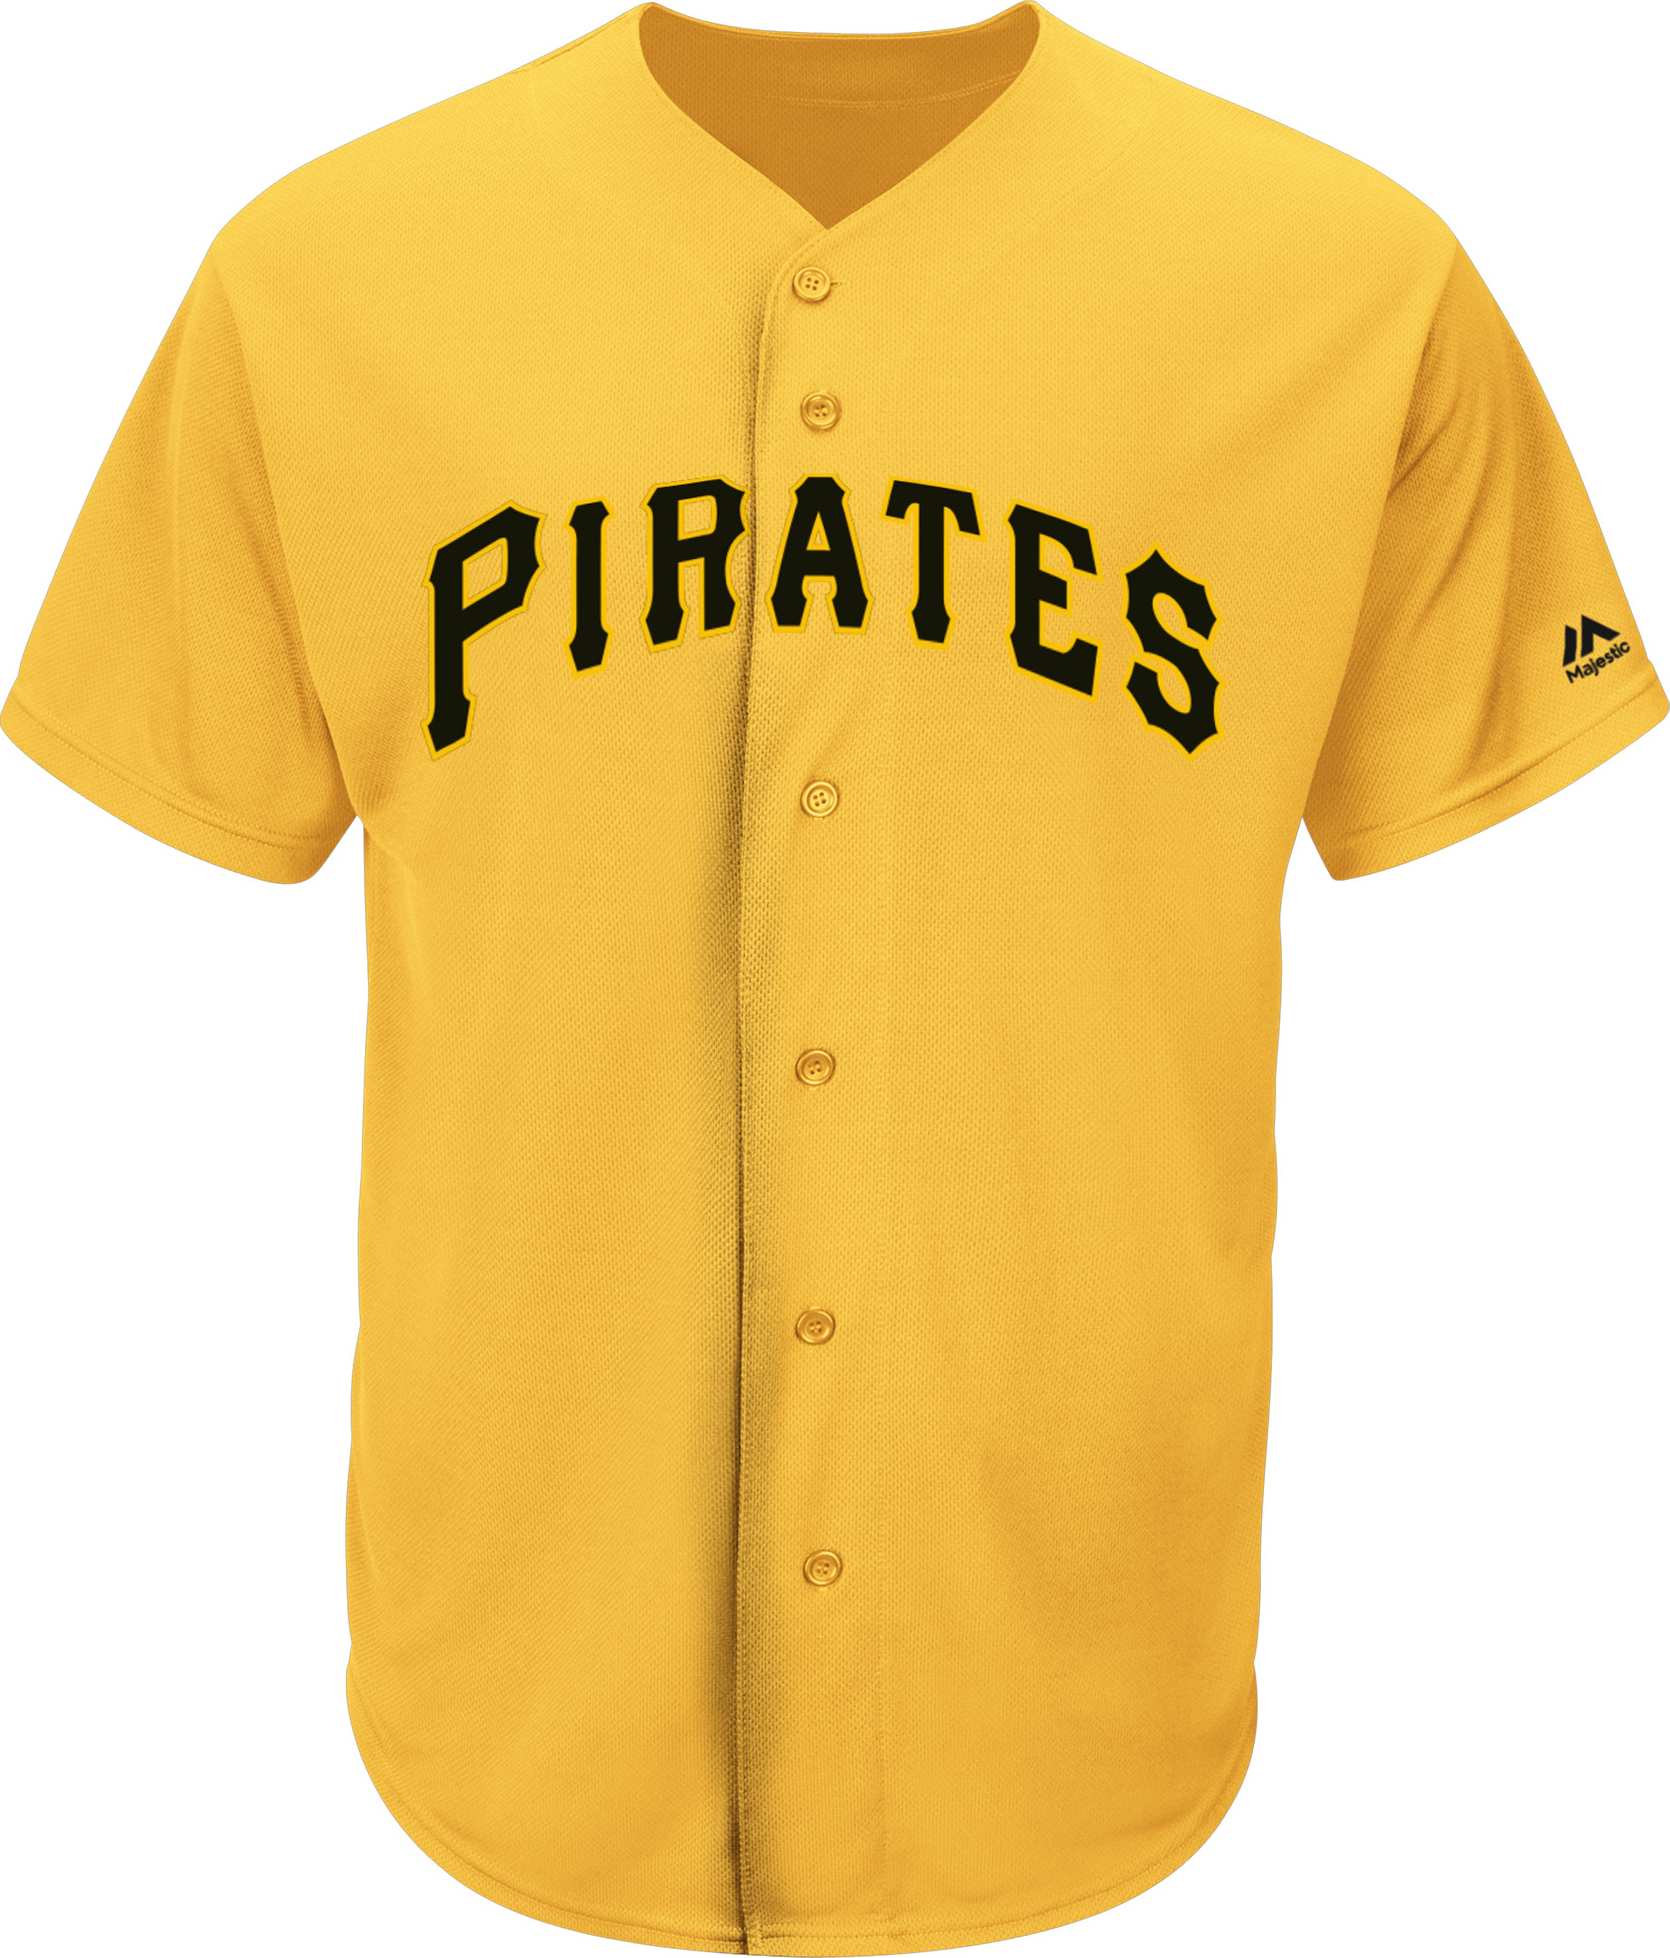 E134496 Majestic MLB Pirates Pro Style Game Jerseys